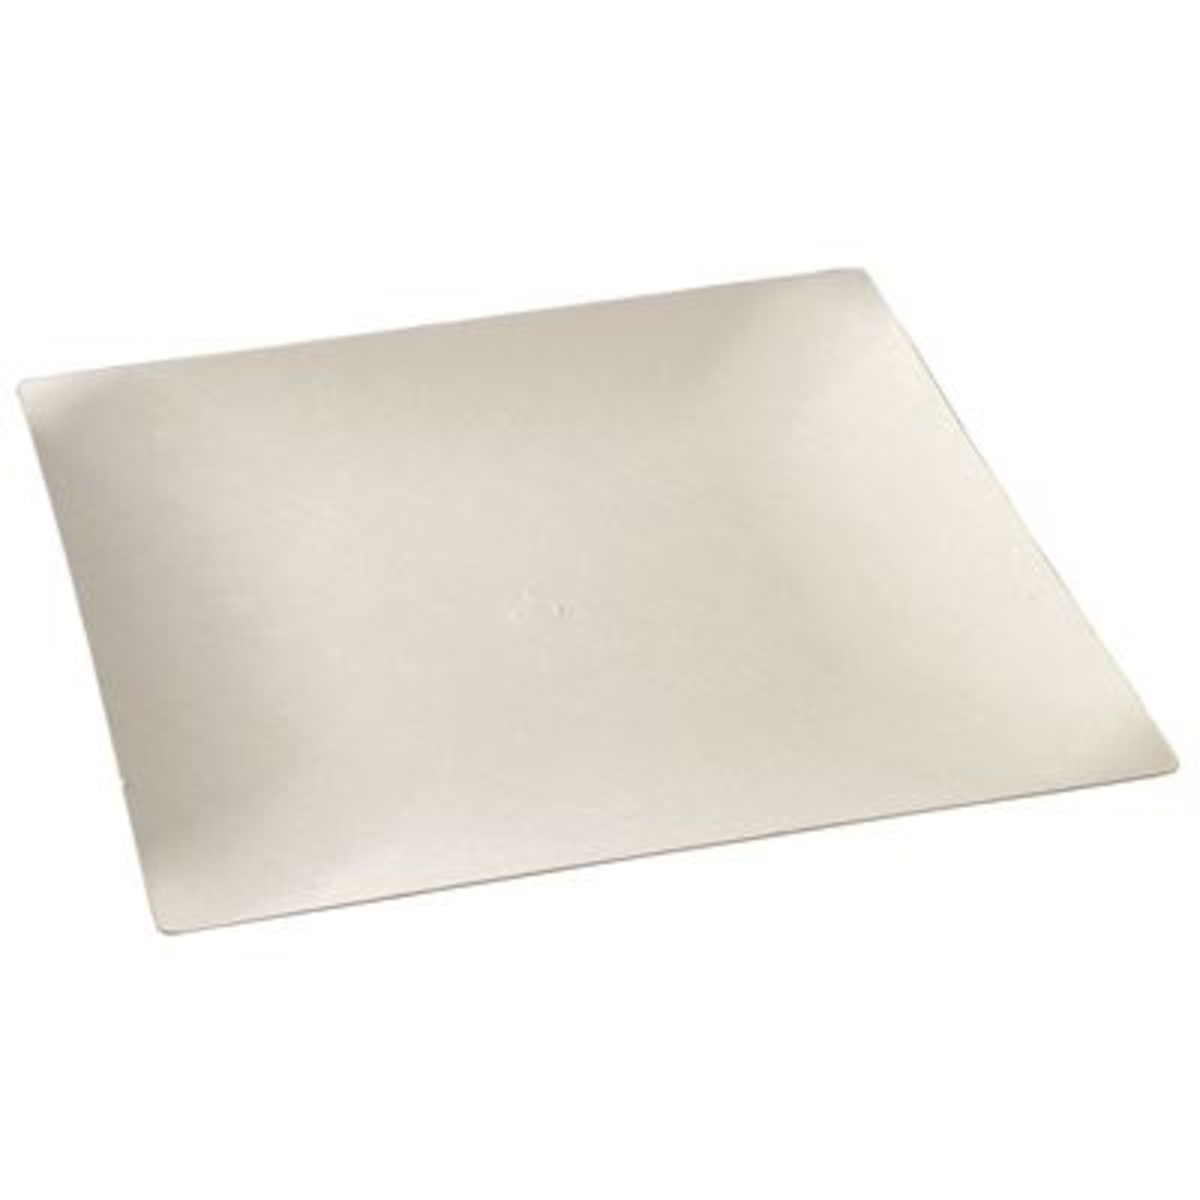 Assiette carrée pulpe de canne 180 x 180 x 15 mm blanc x 1000 Solia - VF42511